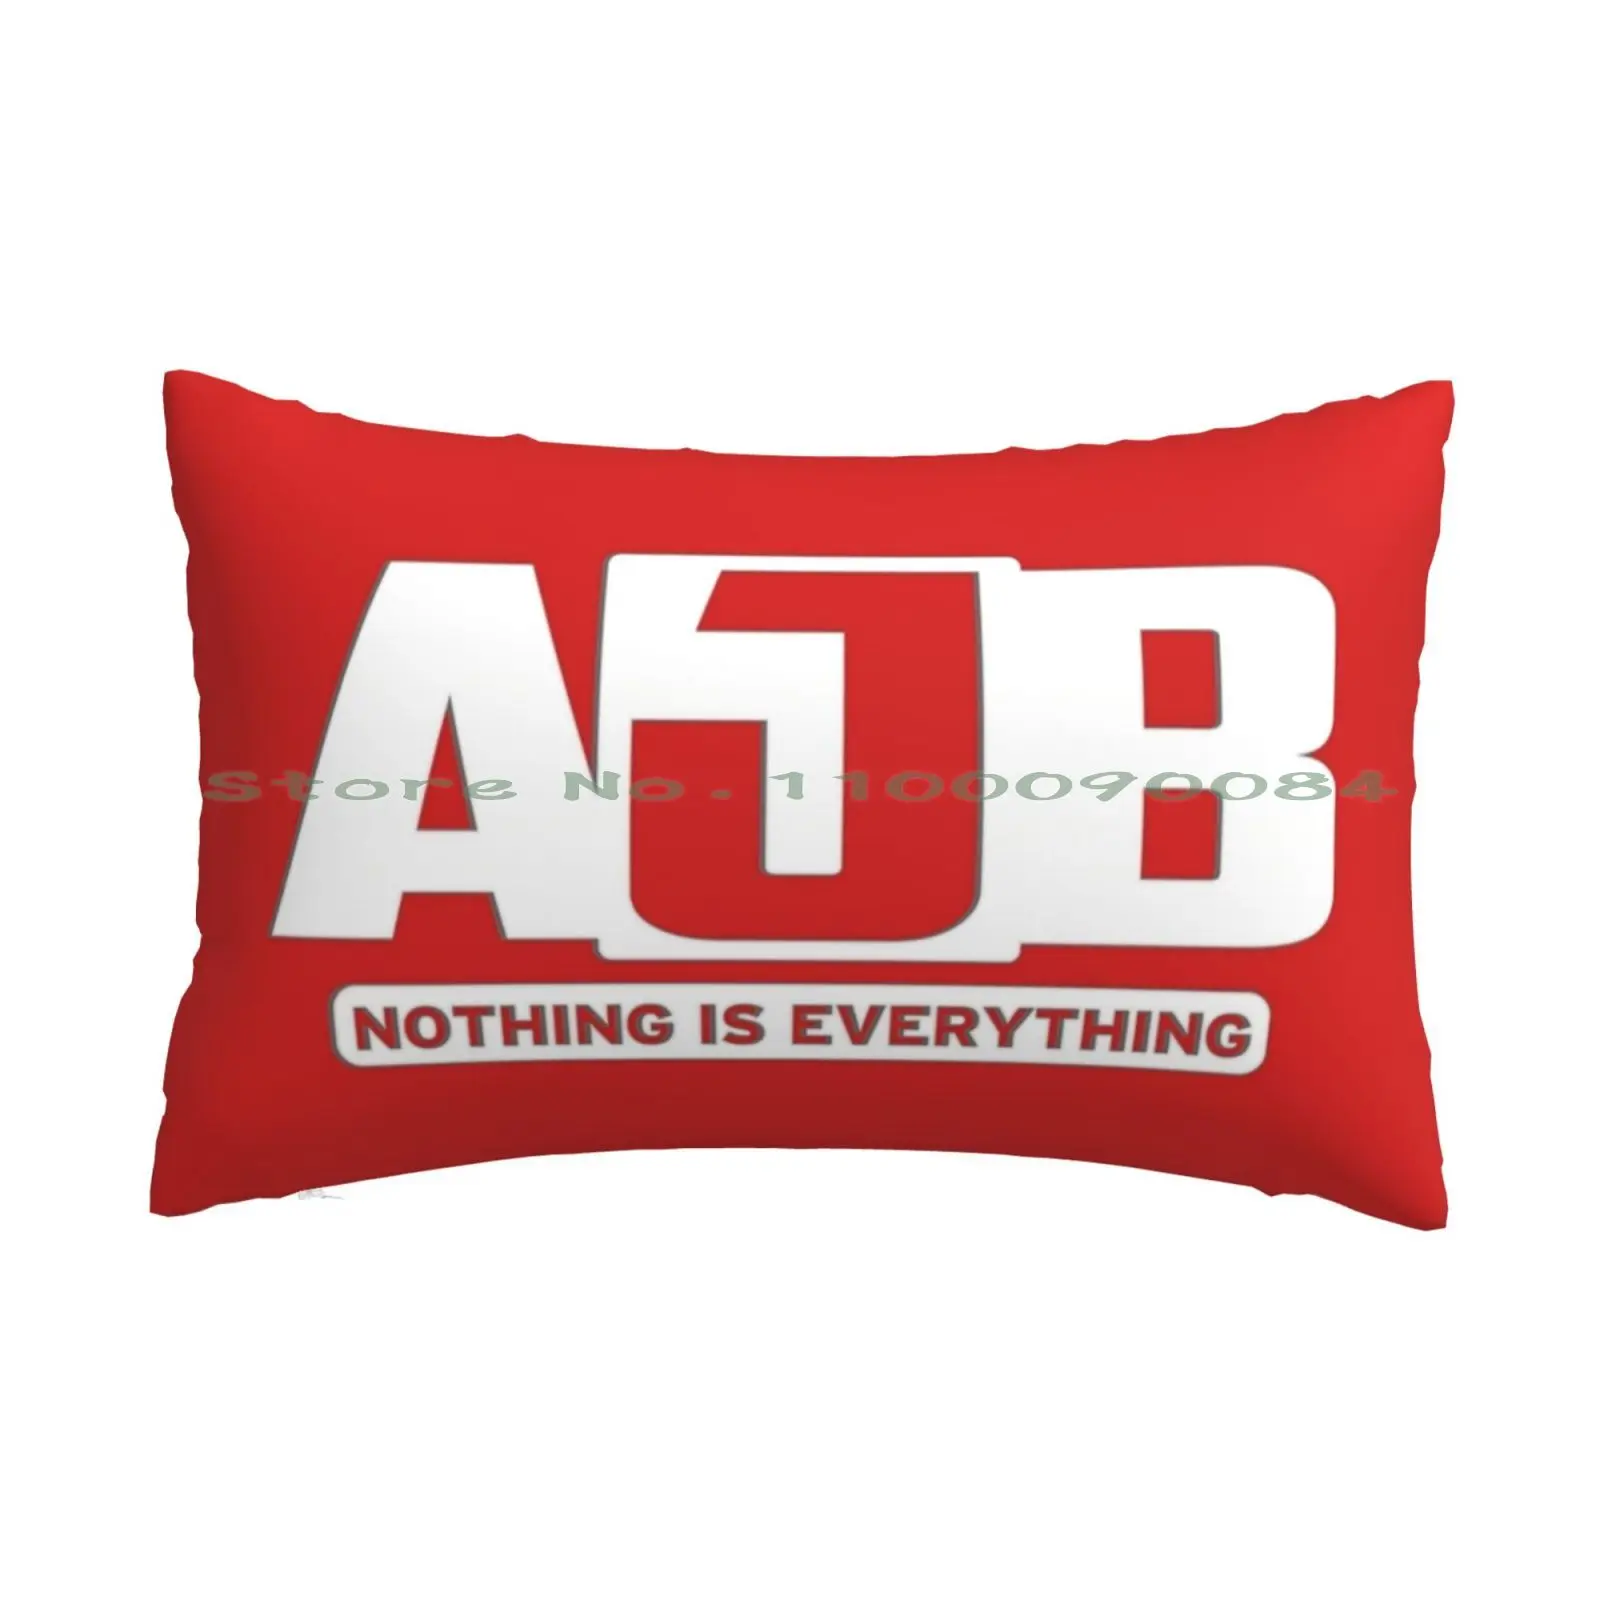 

Чехол для подушки с логотипом Ajb, 20x30, 50*75, для дивана, спальни, планеты, звезды, Вселенная, космос, длинная прямоугольная наволочка для дома